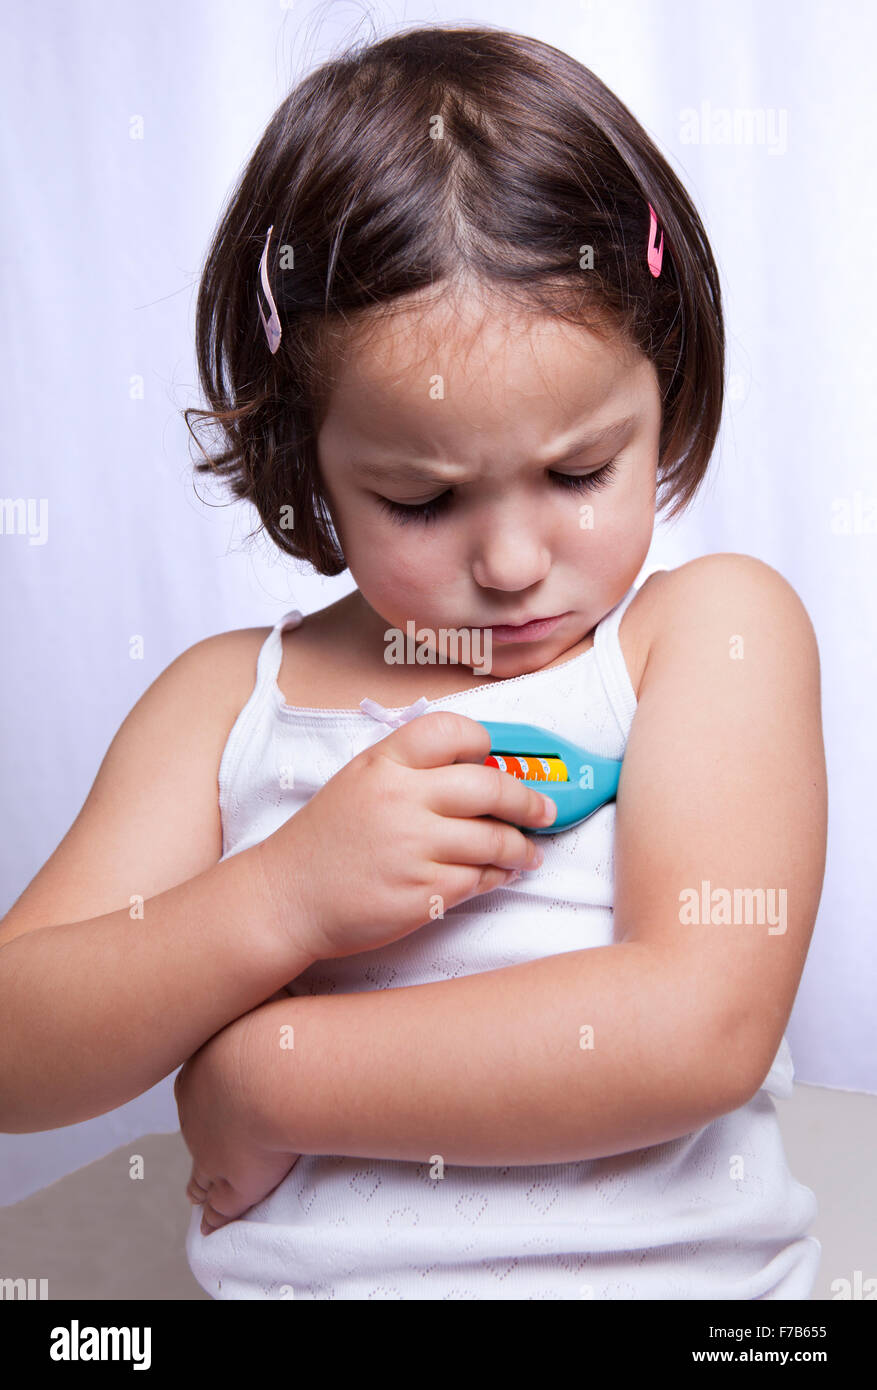 Carino bambina riproduzione medico con termometro giocattolo. Isolato su sfondo bianco Foto Stock